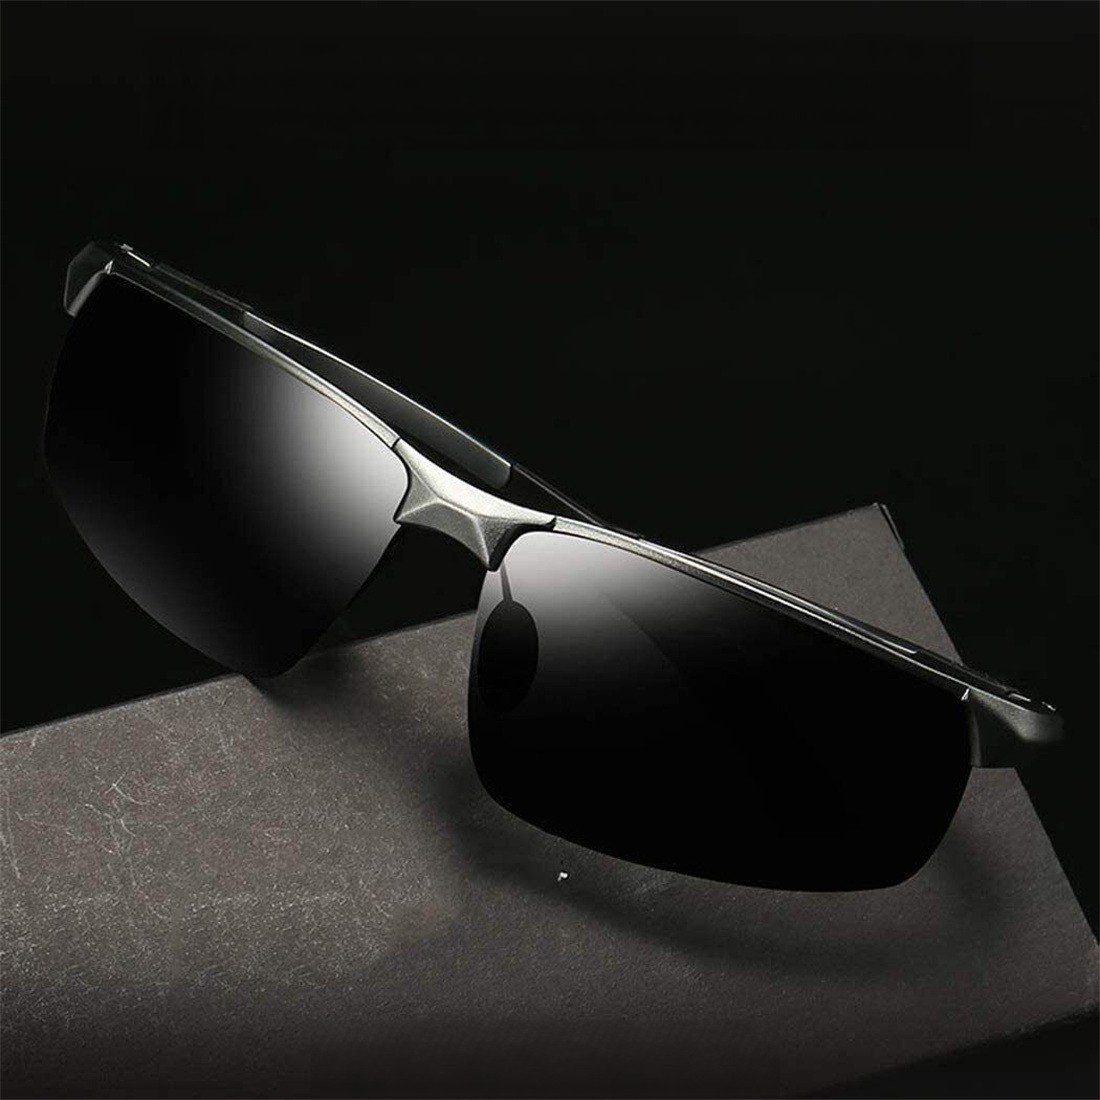 Pilotenbrille HD UV400 Sonnenbrille Herren Sonnenbrille Schutz Polarisiert Fahren DÖRÖY